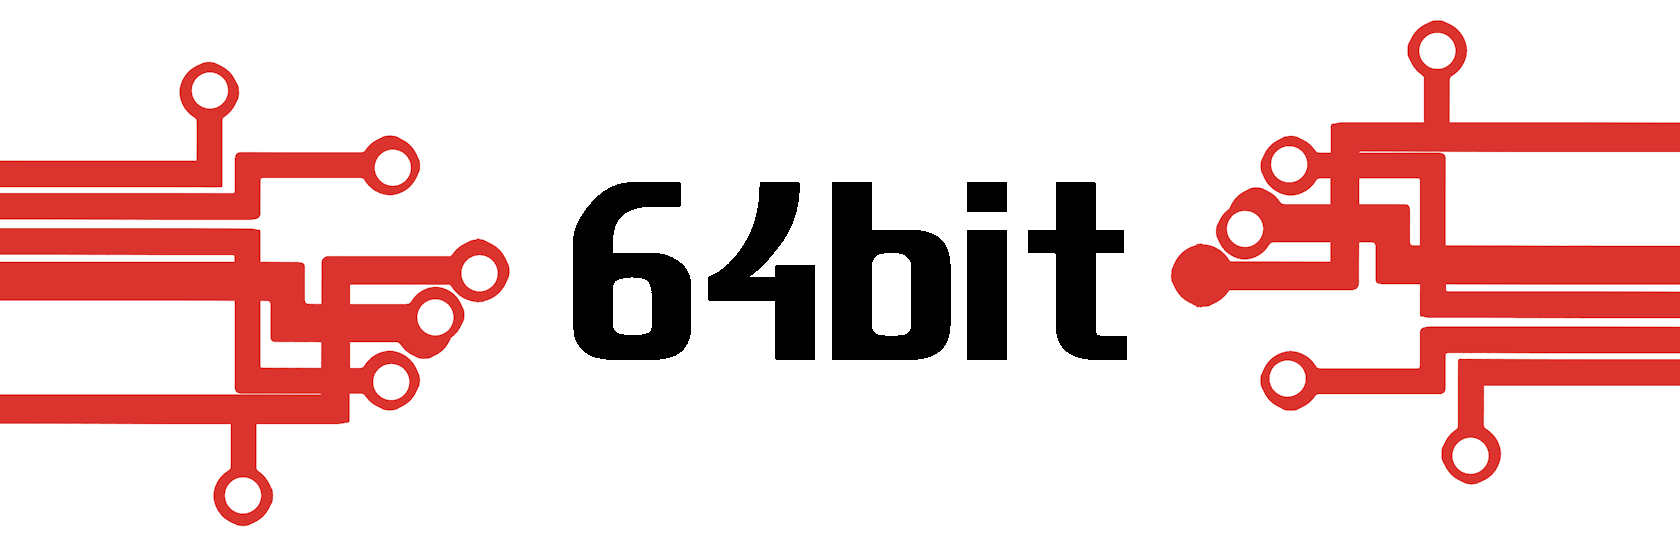 64bity